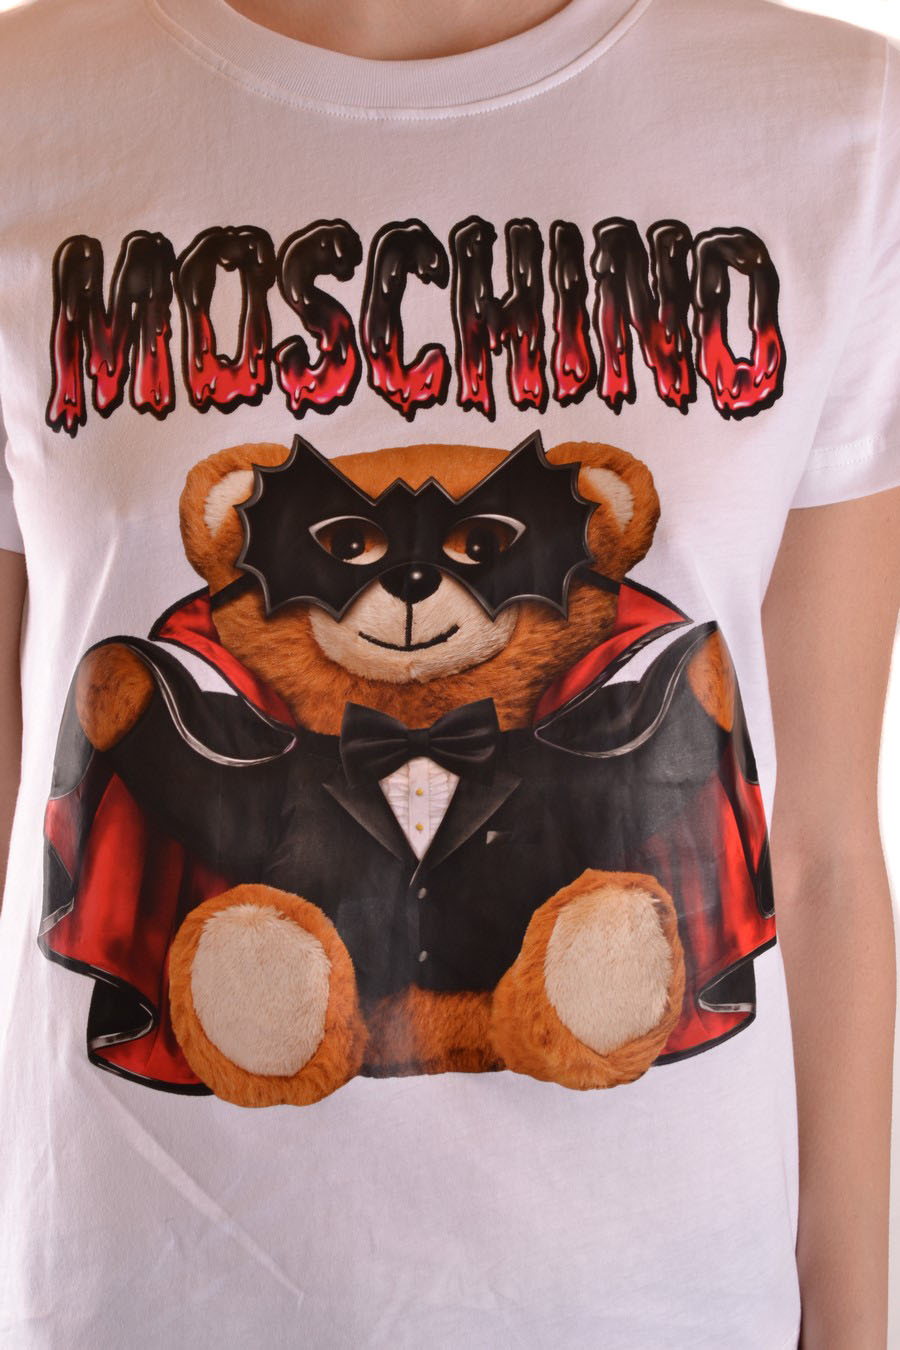 MOSCHINO T-shirts | ViganoBoutique.com